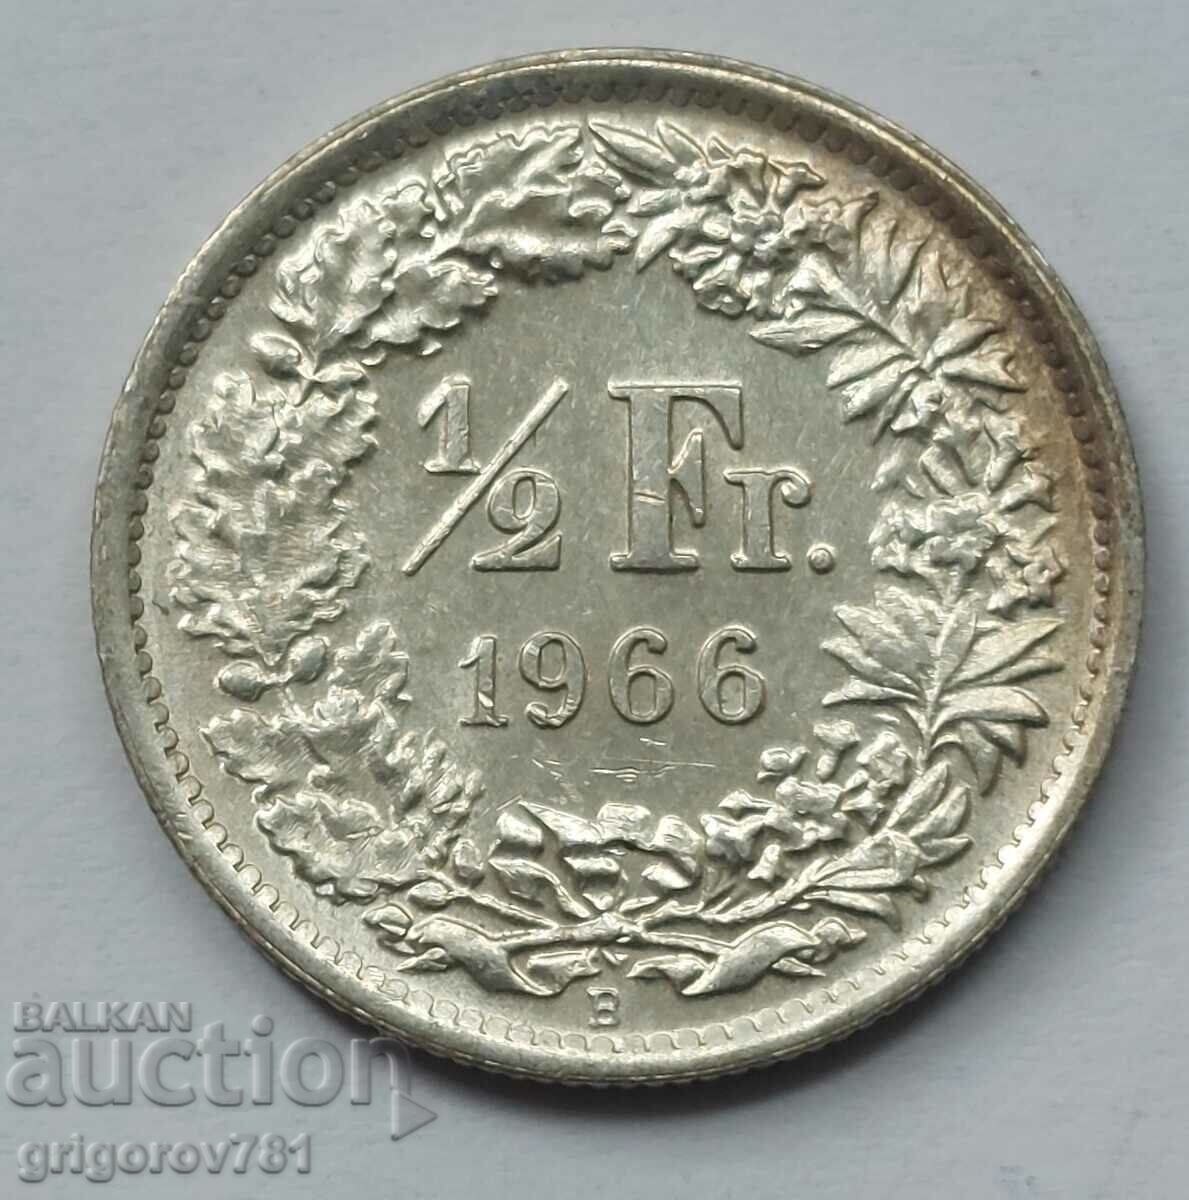 Ασημένιο φράγκο 1/2 Ελβετία 1966 Β - Ασημένιο νόμισμα #107